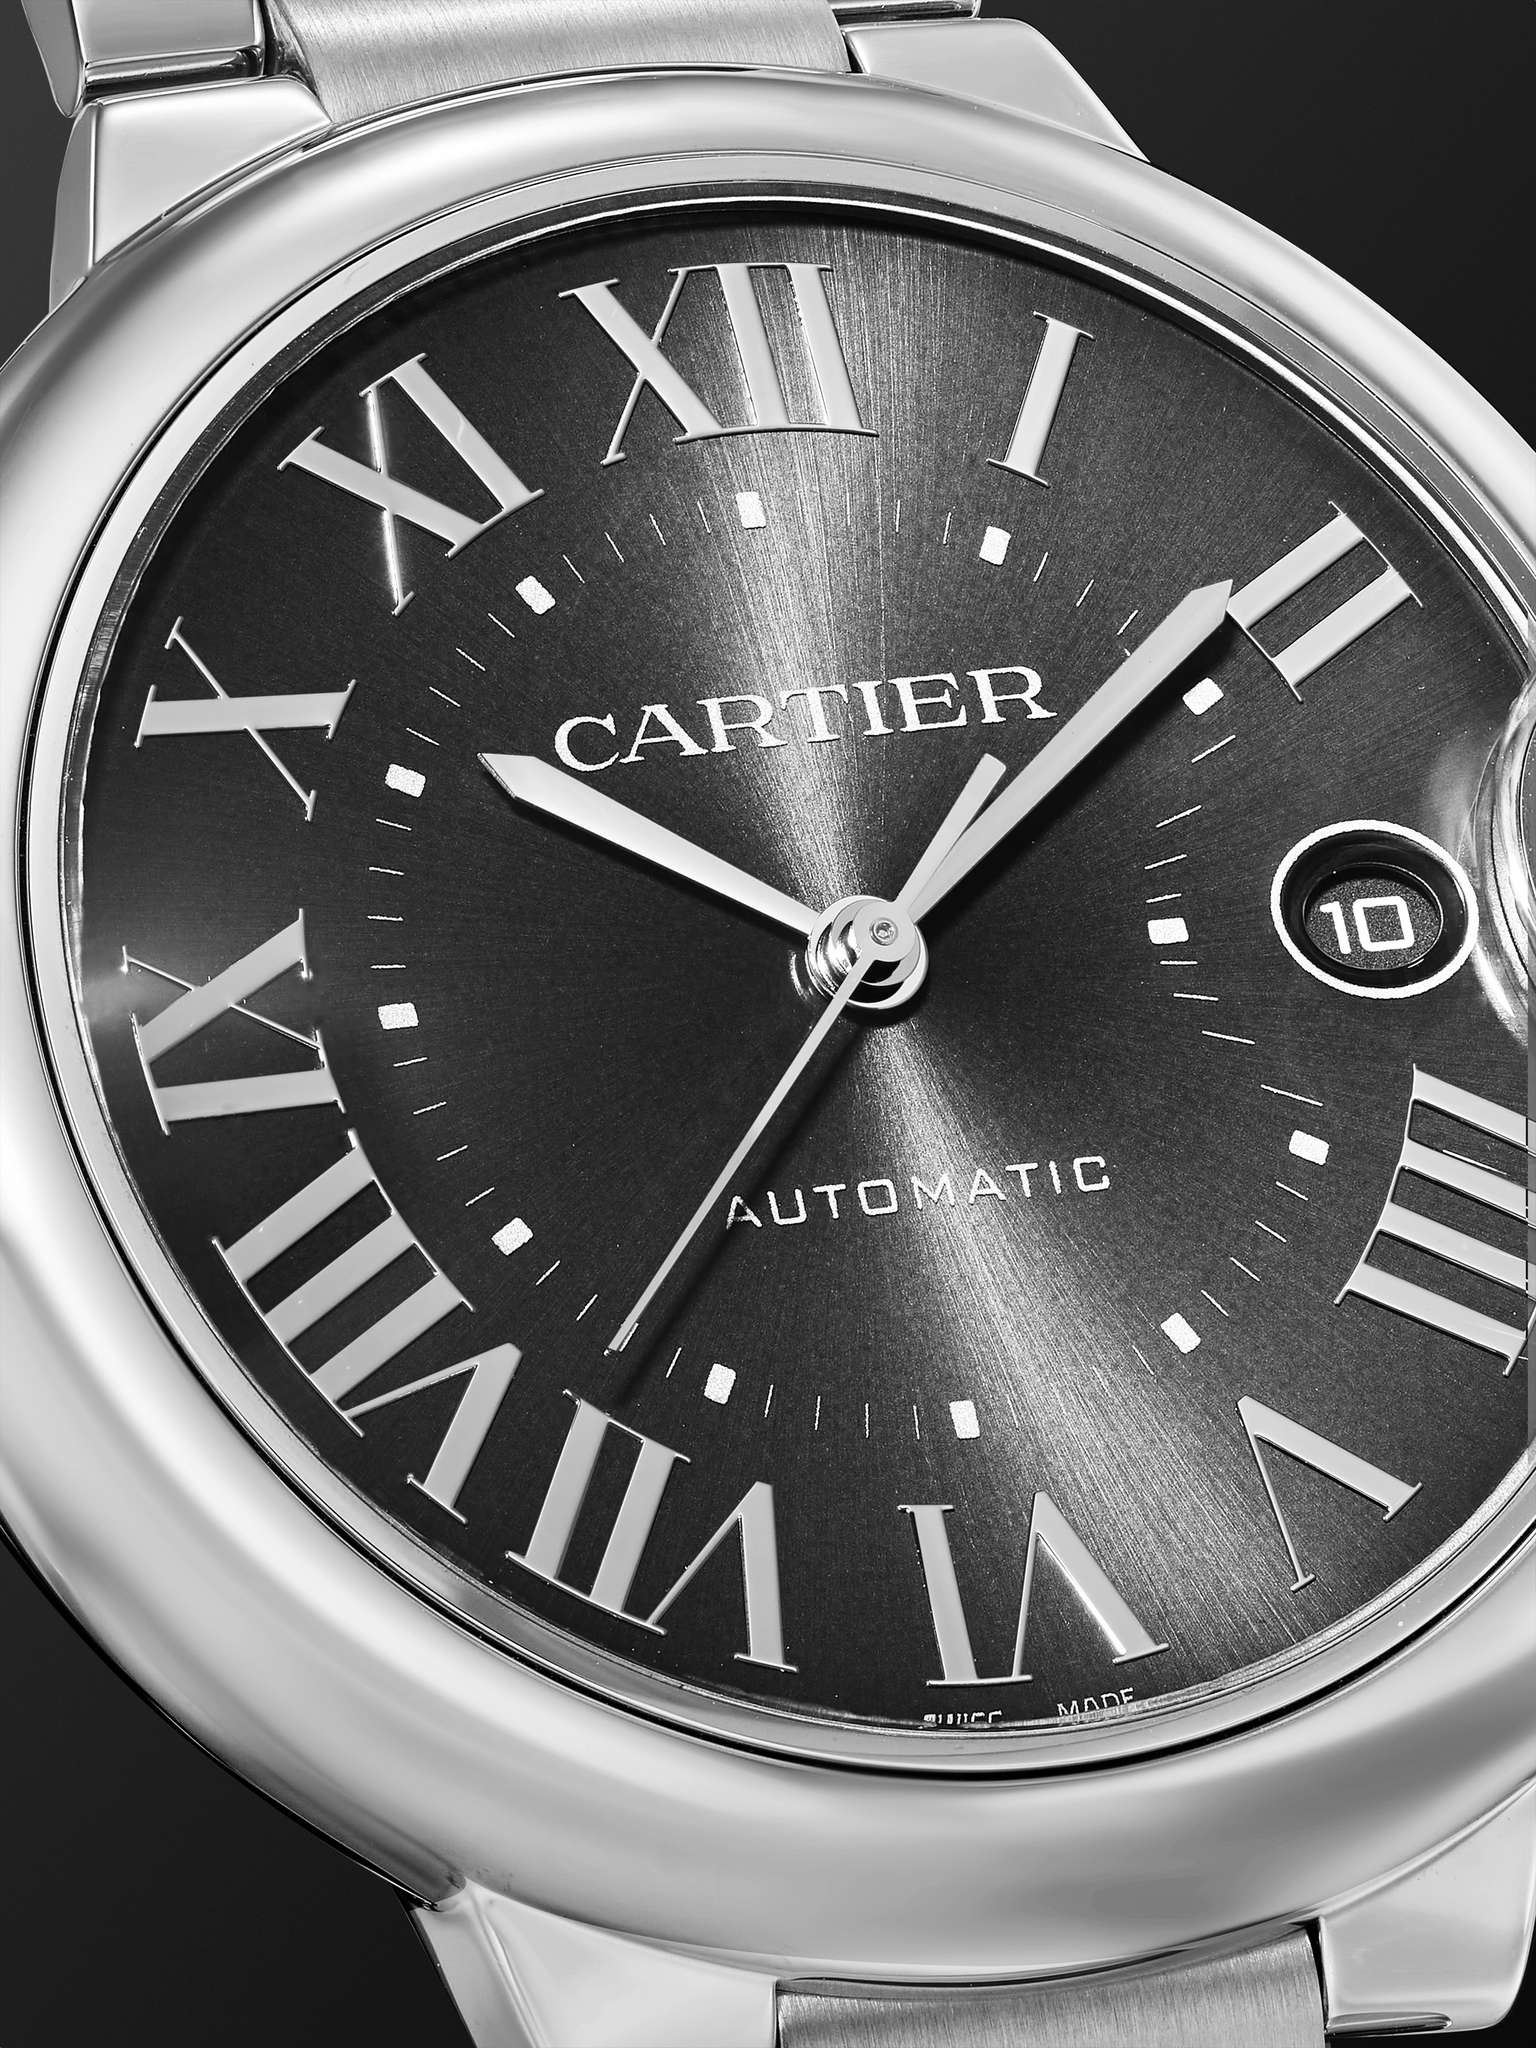 Ballon Bleu de Cartier Automatic 40mm Stainless Steel Watch, Ref. No. WSBB0060 - 5